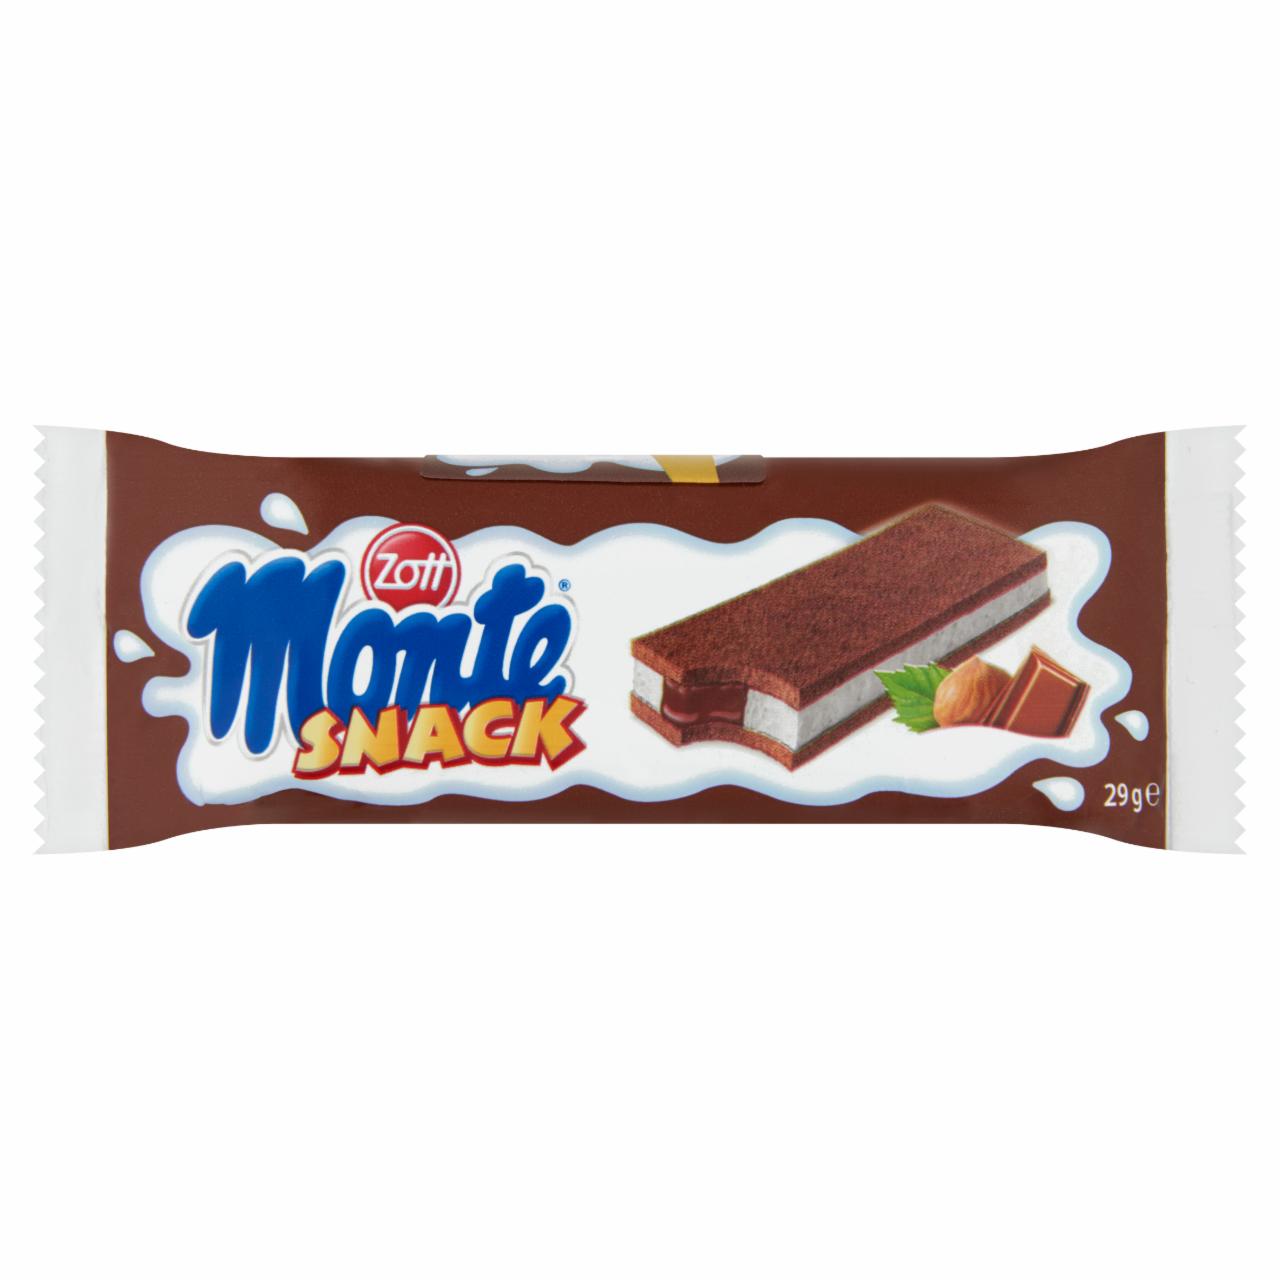 Képek - Zott Monte Snack tejes, csokoládés-mogyorós krémmel töltött sütemény 4 x 29 g